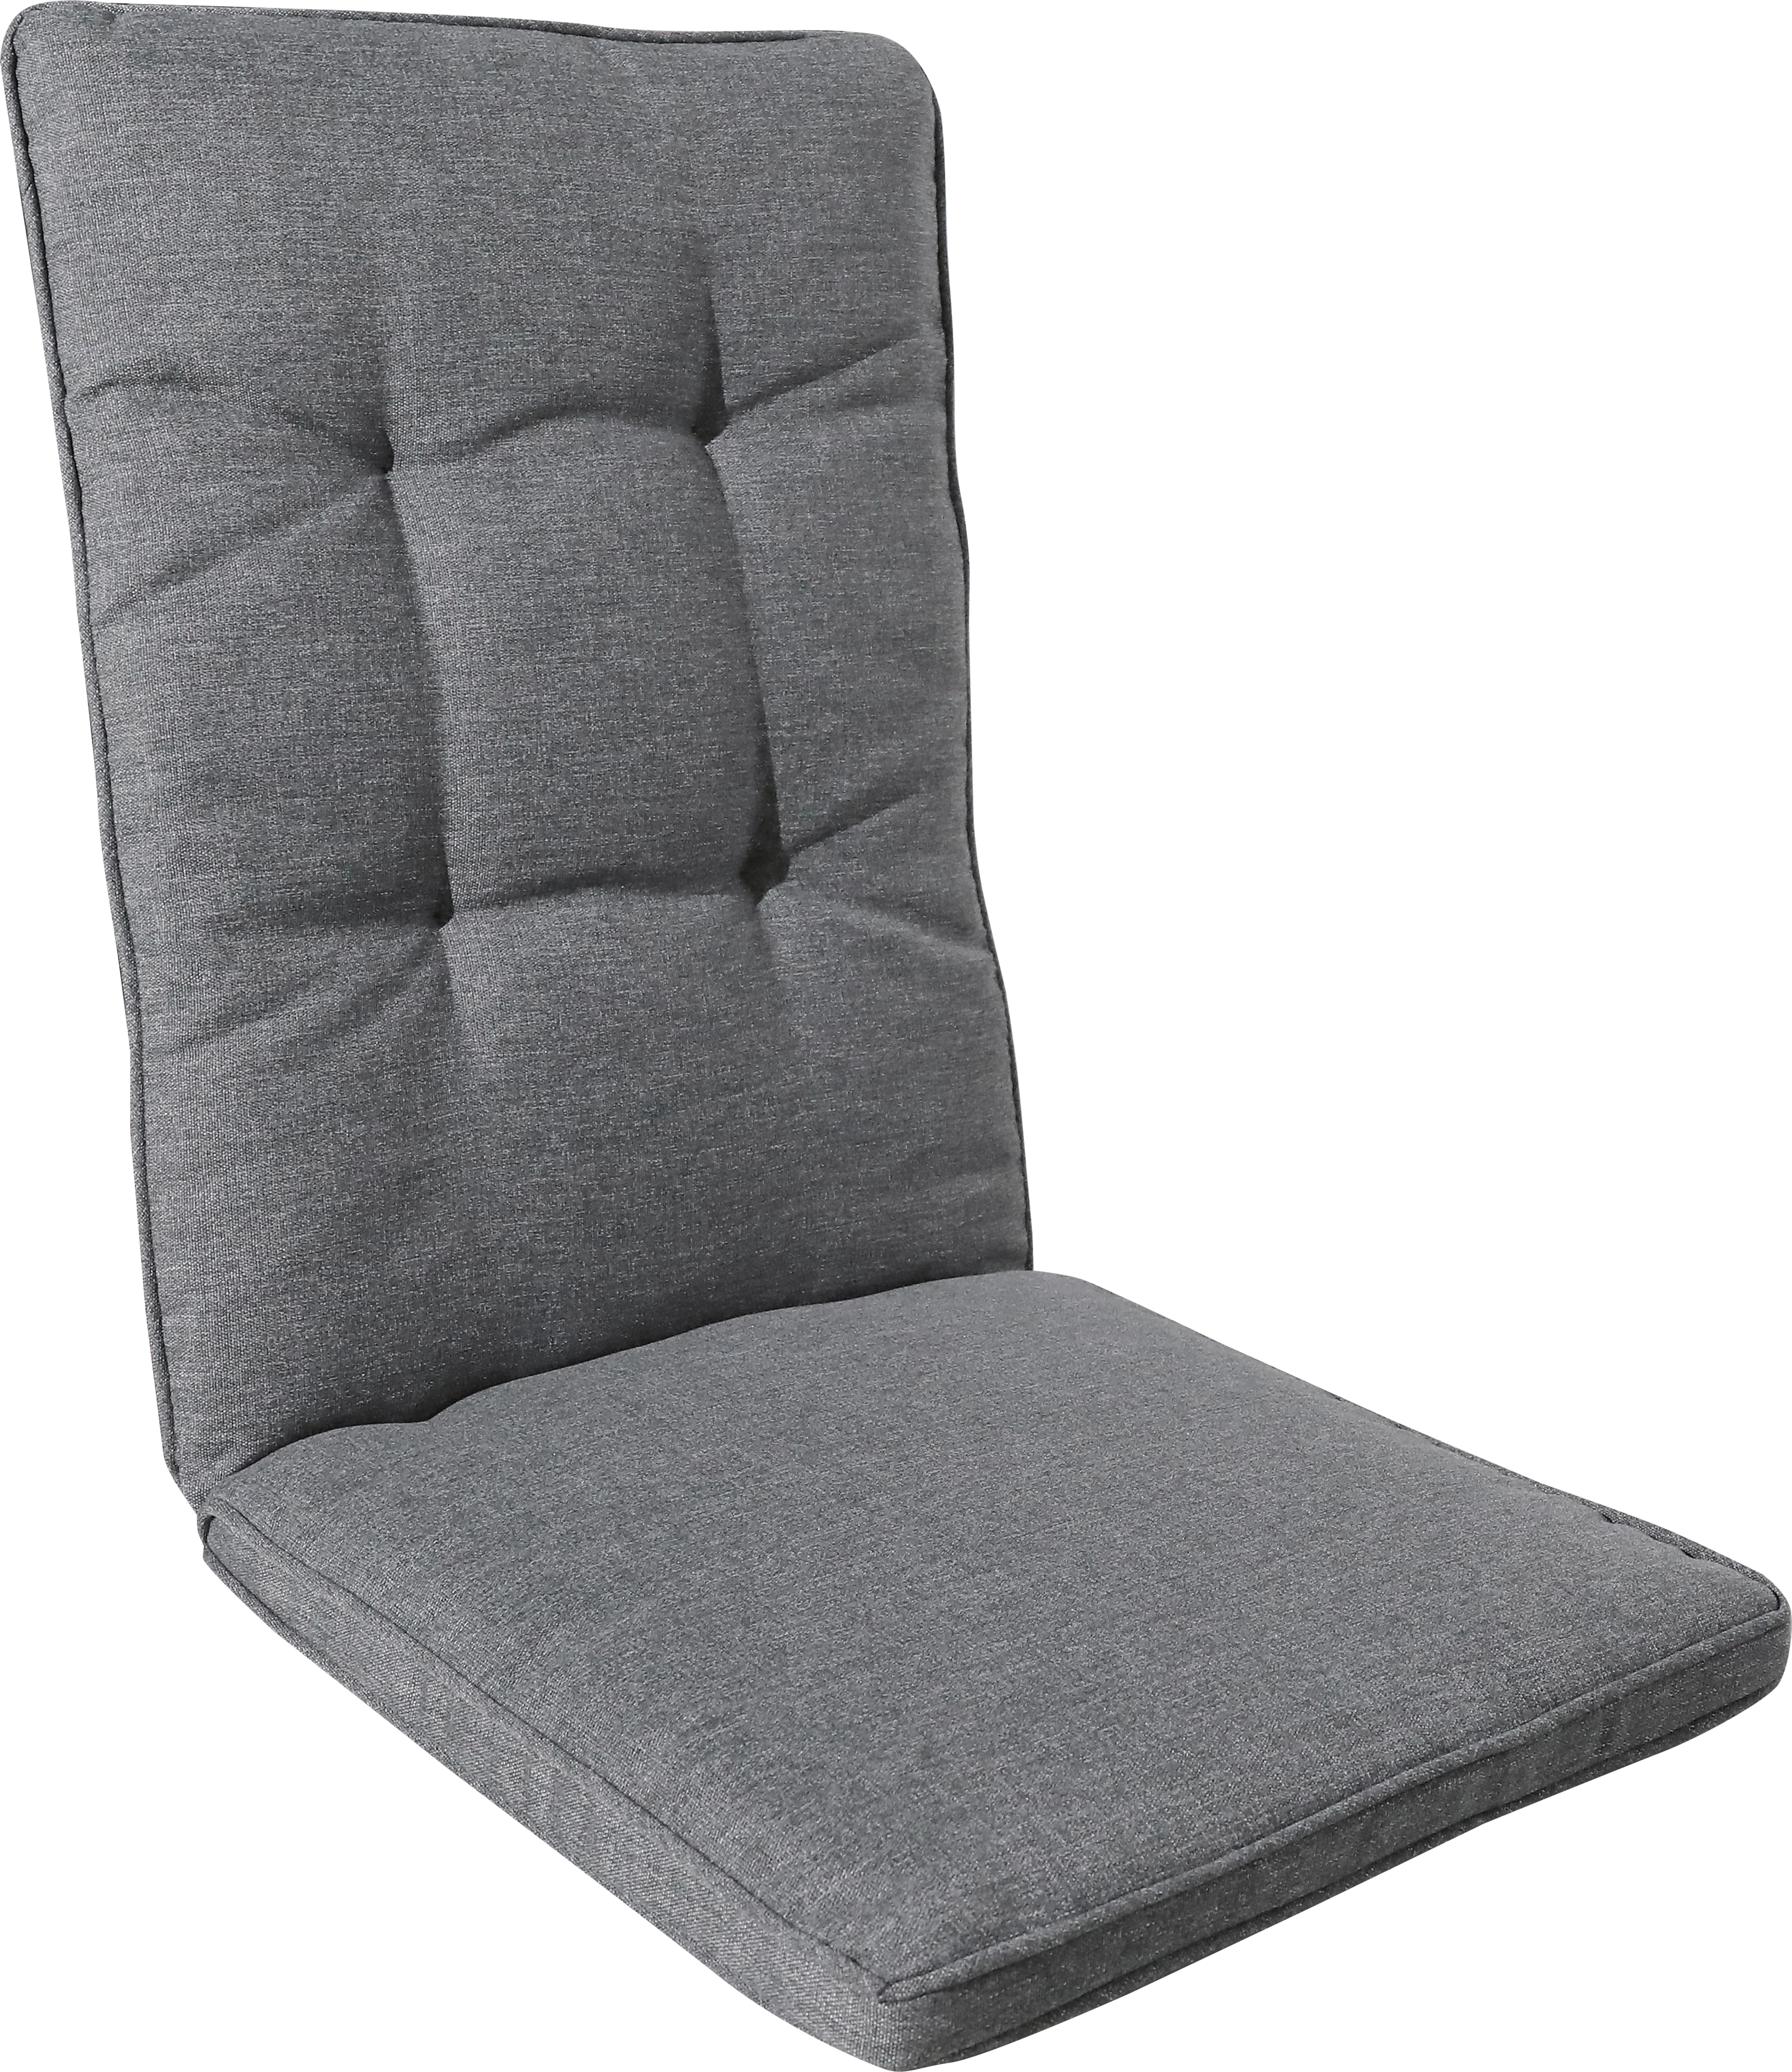 Ersatz-) Sitz-/Rückenkissen für Dedin Lounge-Stuhl Grau kaufen bei OBI